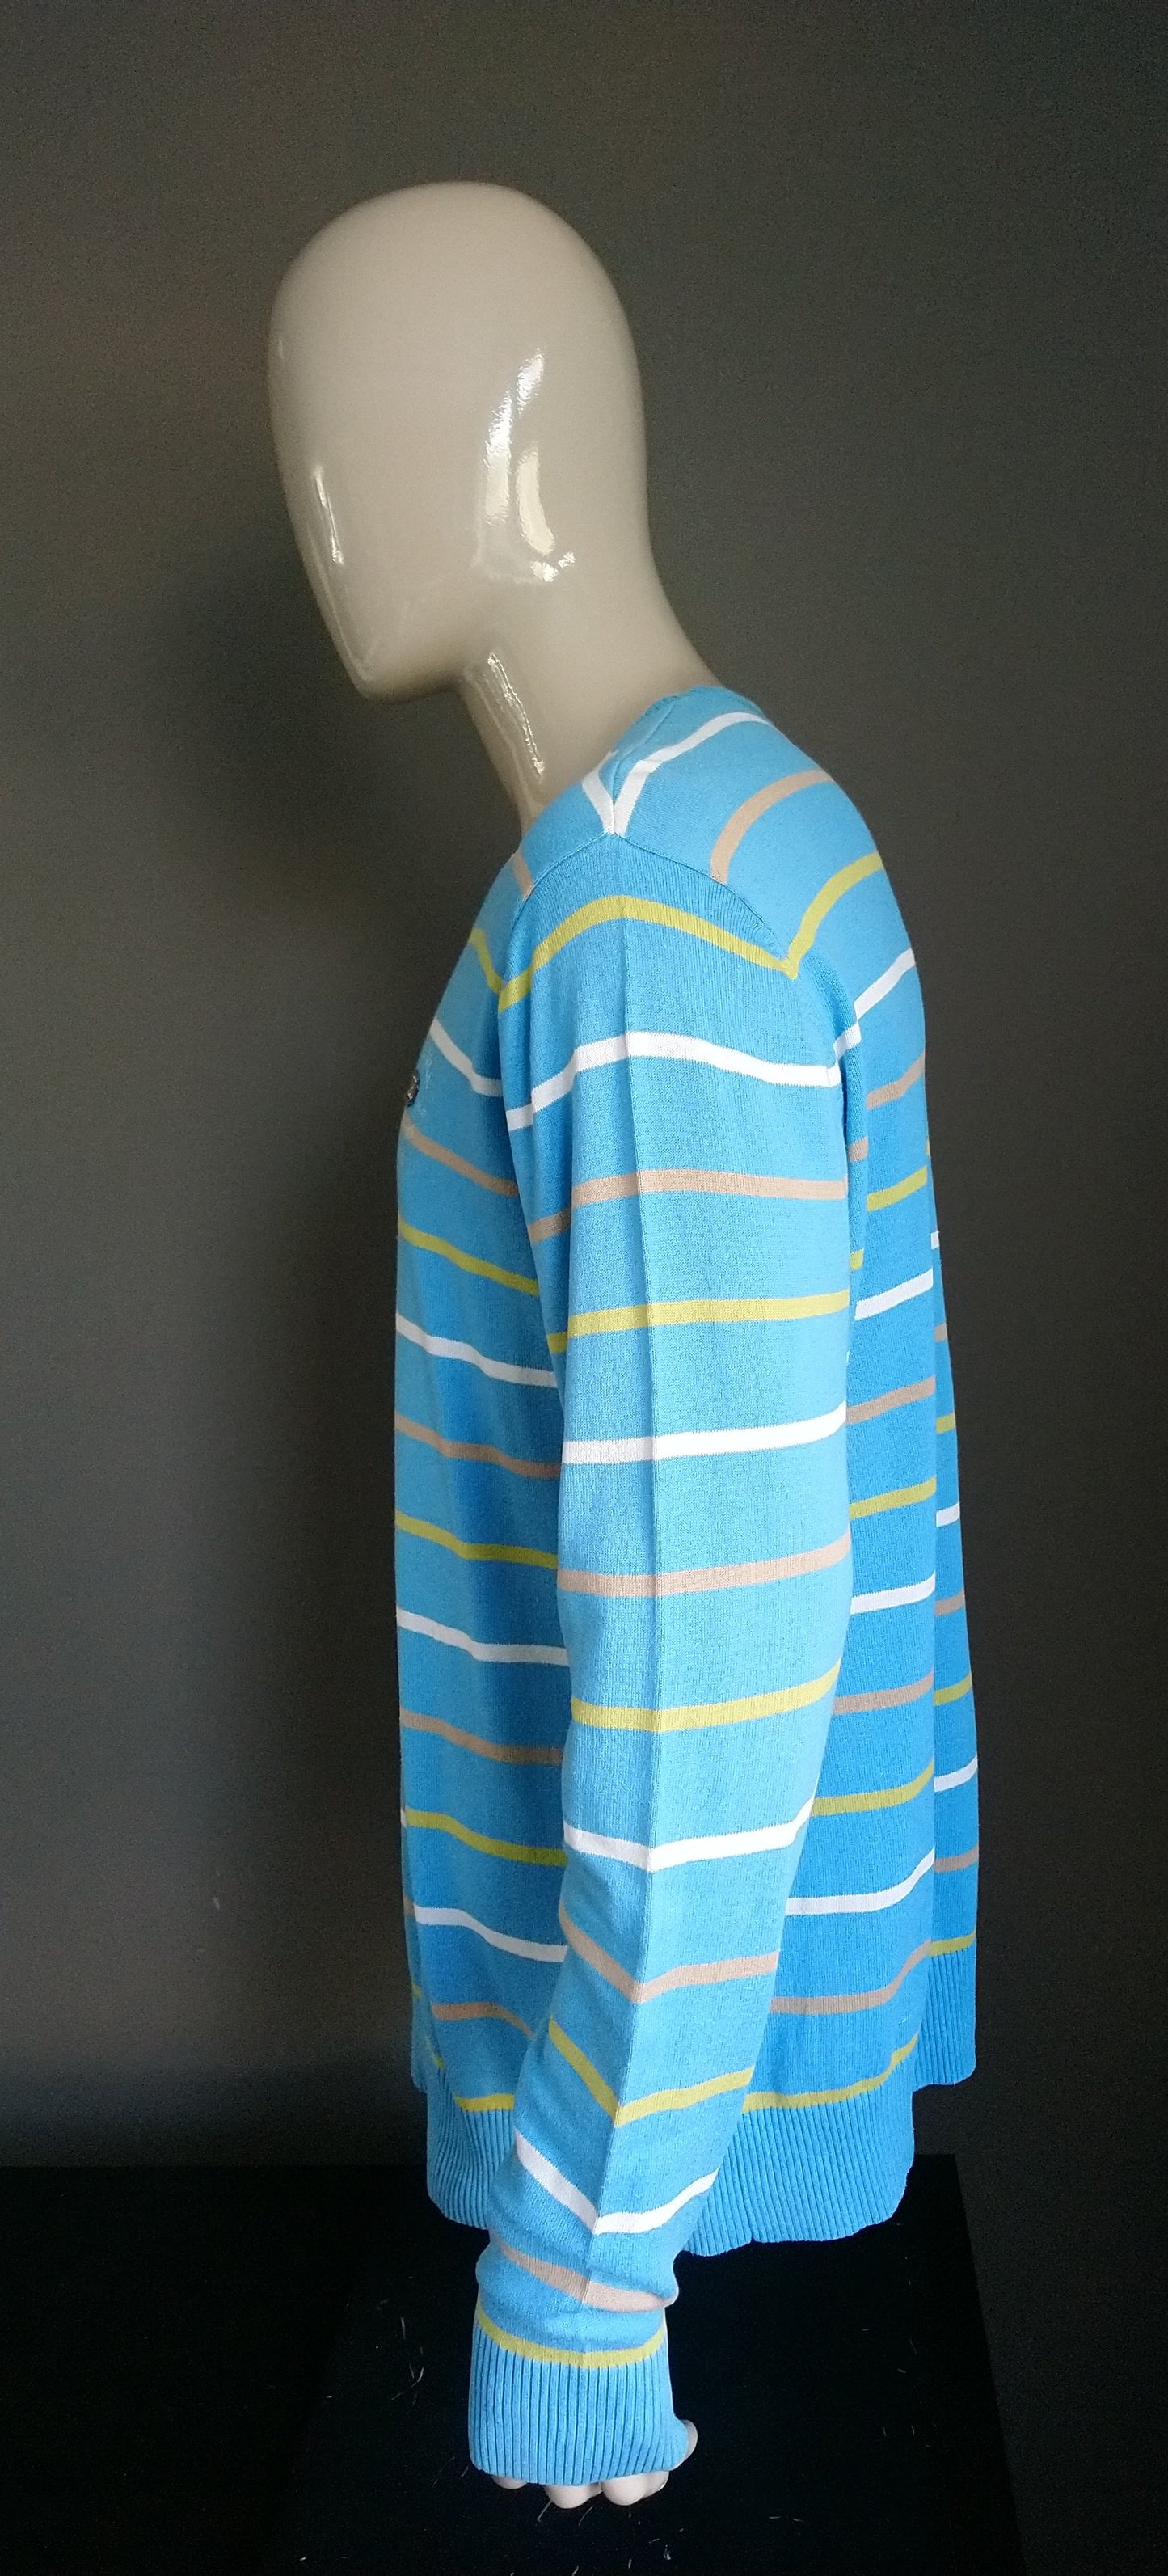 B Scelta: maglione PMME Pall Mall con scollo a V. Strisce bianche marrone verde blu. Taglia XL. Punti